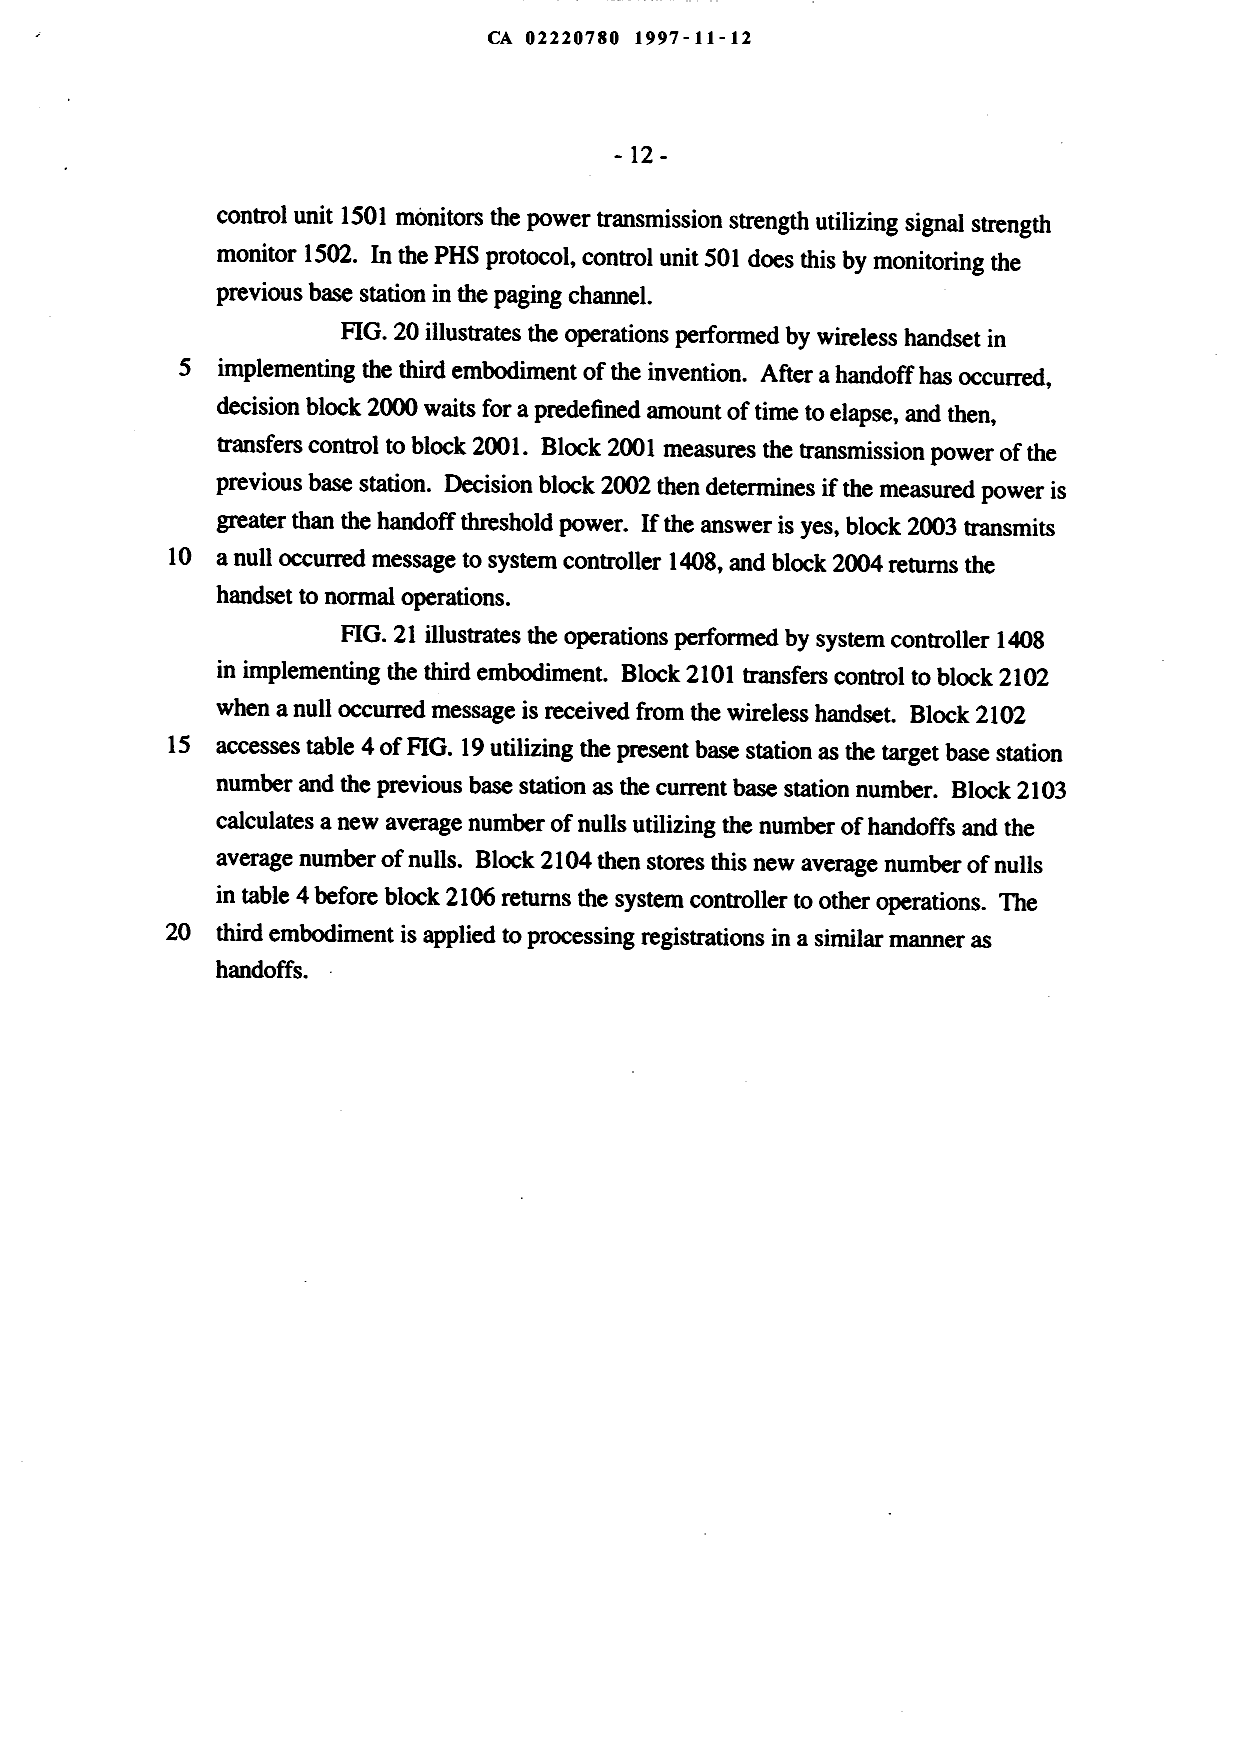 Canadian Patent Document 2220780. Description 19971112. Image 12 of 12